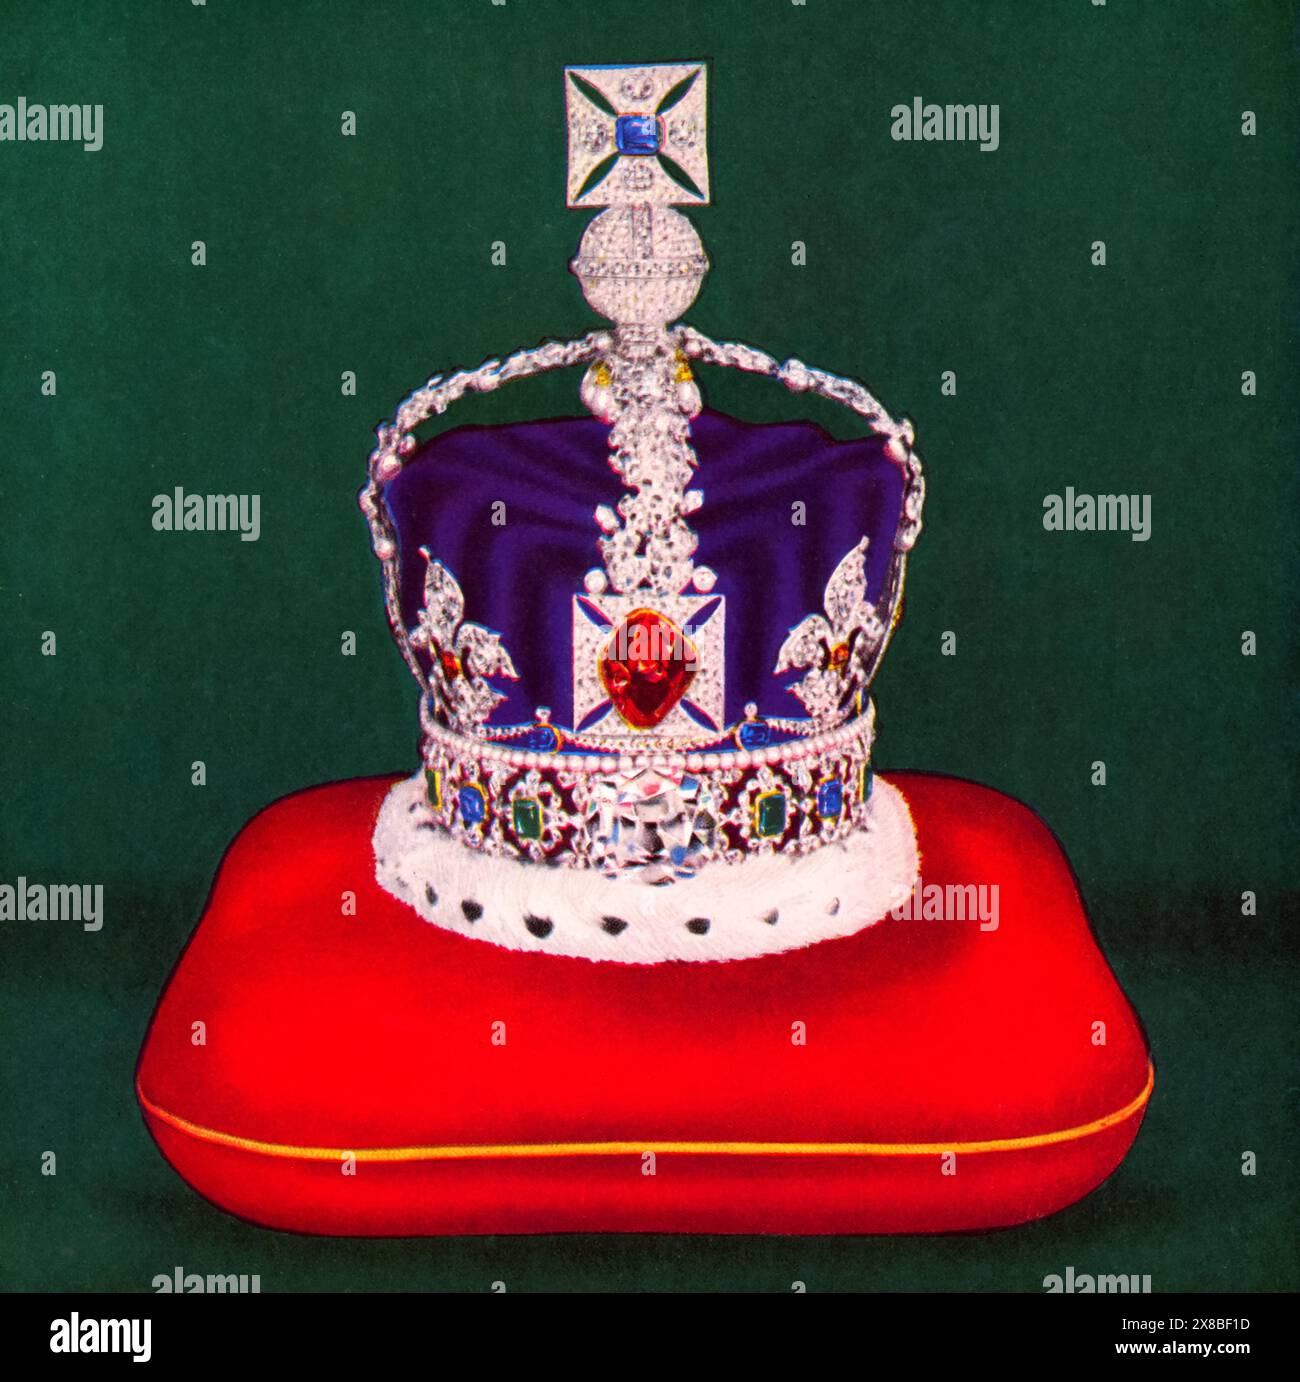 Die Kaiserliche Staatskrone, 1953. Die Imperial State Crown ist einer der Kronjuwelen des Vereinigten Königreichs und symbolisiert die Souveränität des Monarchen. Sie existiert seit dem 15. Jahrhundert in verschiedenen Formen. Die aktuelle Version wurde 1937 hergestellt und wird vom Monarchen nach einer Krönung getragen und bei den Staatsöffnungen des Parlaments verwendet. Die Krone ist mit 2.901 Edelsteinen verziert, darunter dem Cullinan II Diamanten, dem St Edward's Saphir, dem Stuart Saphir und dem Black Prince's Rubin. Stockfoto